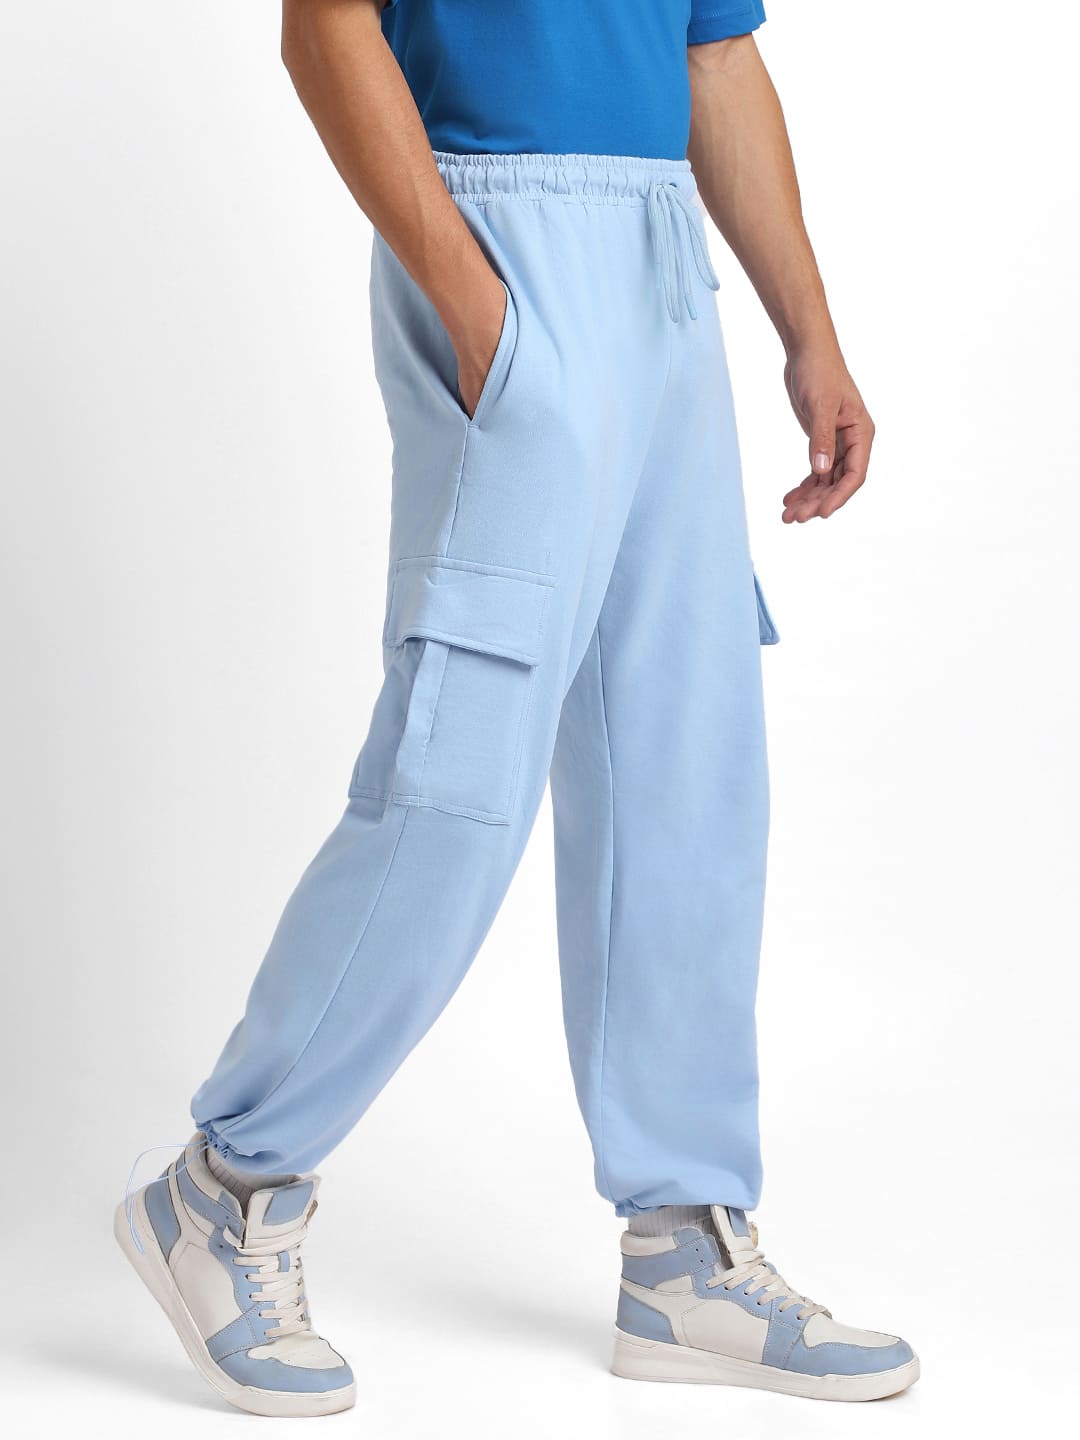 BERSHKA Cotton cargo trousers Sale-30% xxs,xs,s,m,l,xl,xxL 1199грн |  Instagram